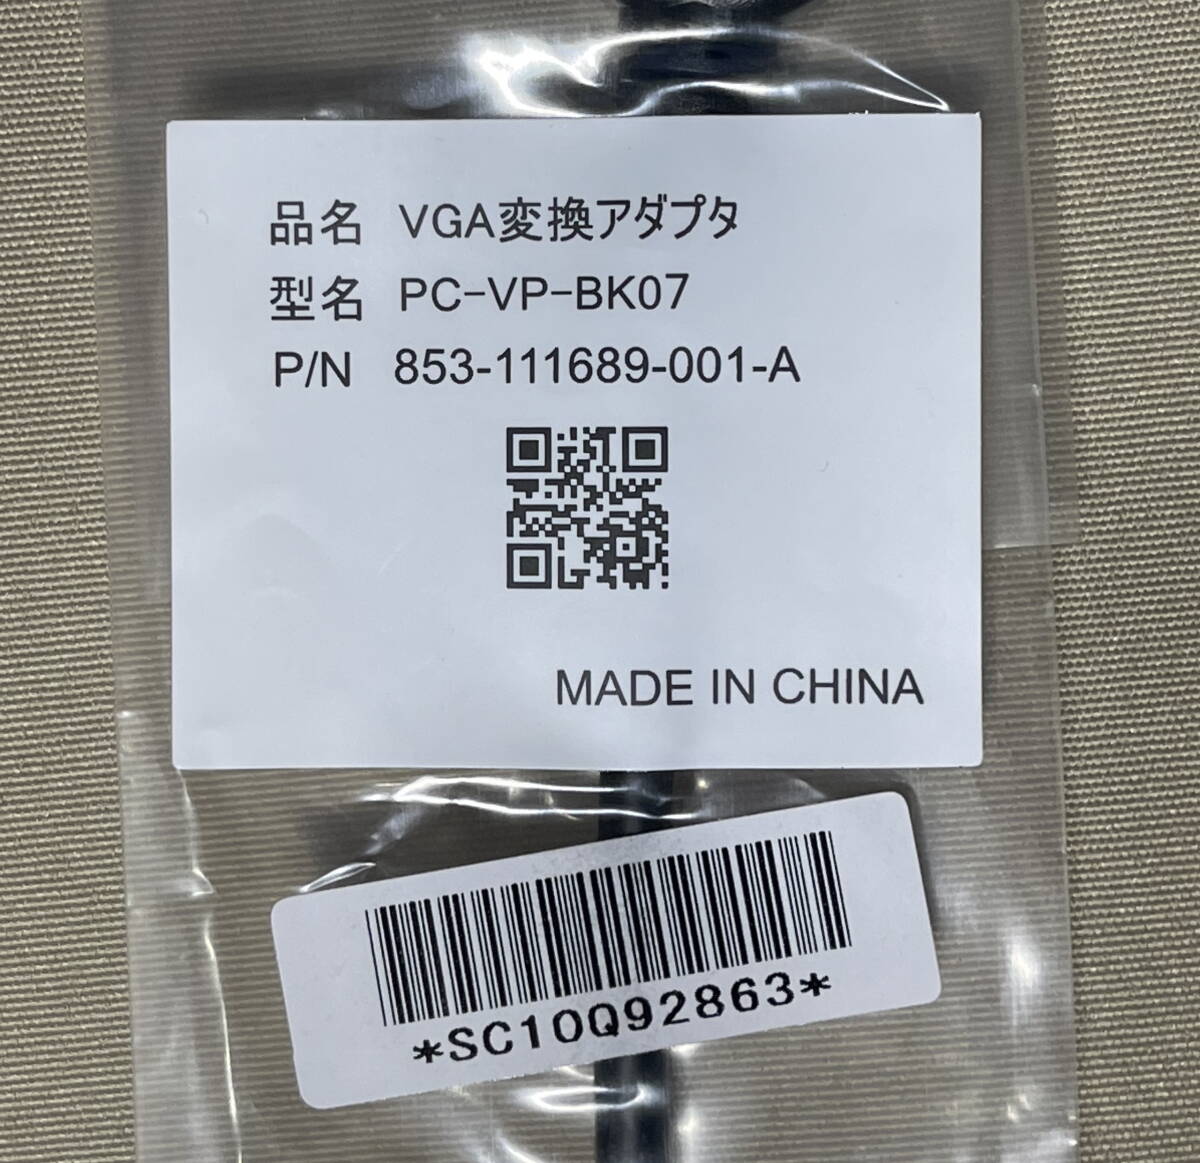 即決 NEC PC-VP-BK07 HDMI出力端子をDsub-15Pin 3段コネクタ「アナログRGB CRTコネクタ VGA」に変換 クリックポスト発送185円_画像2